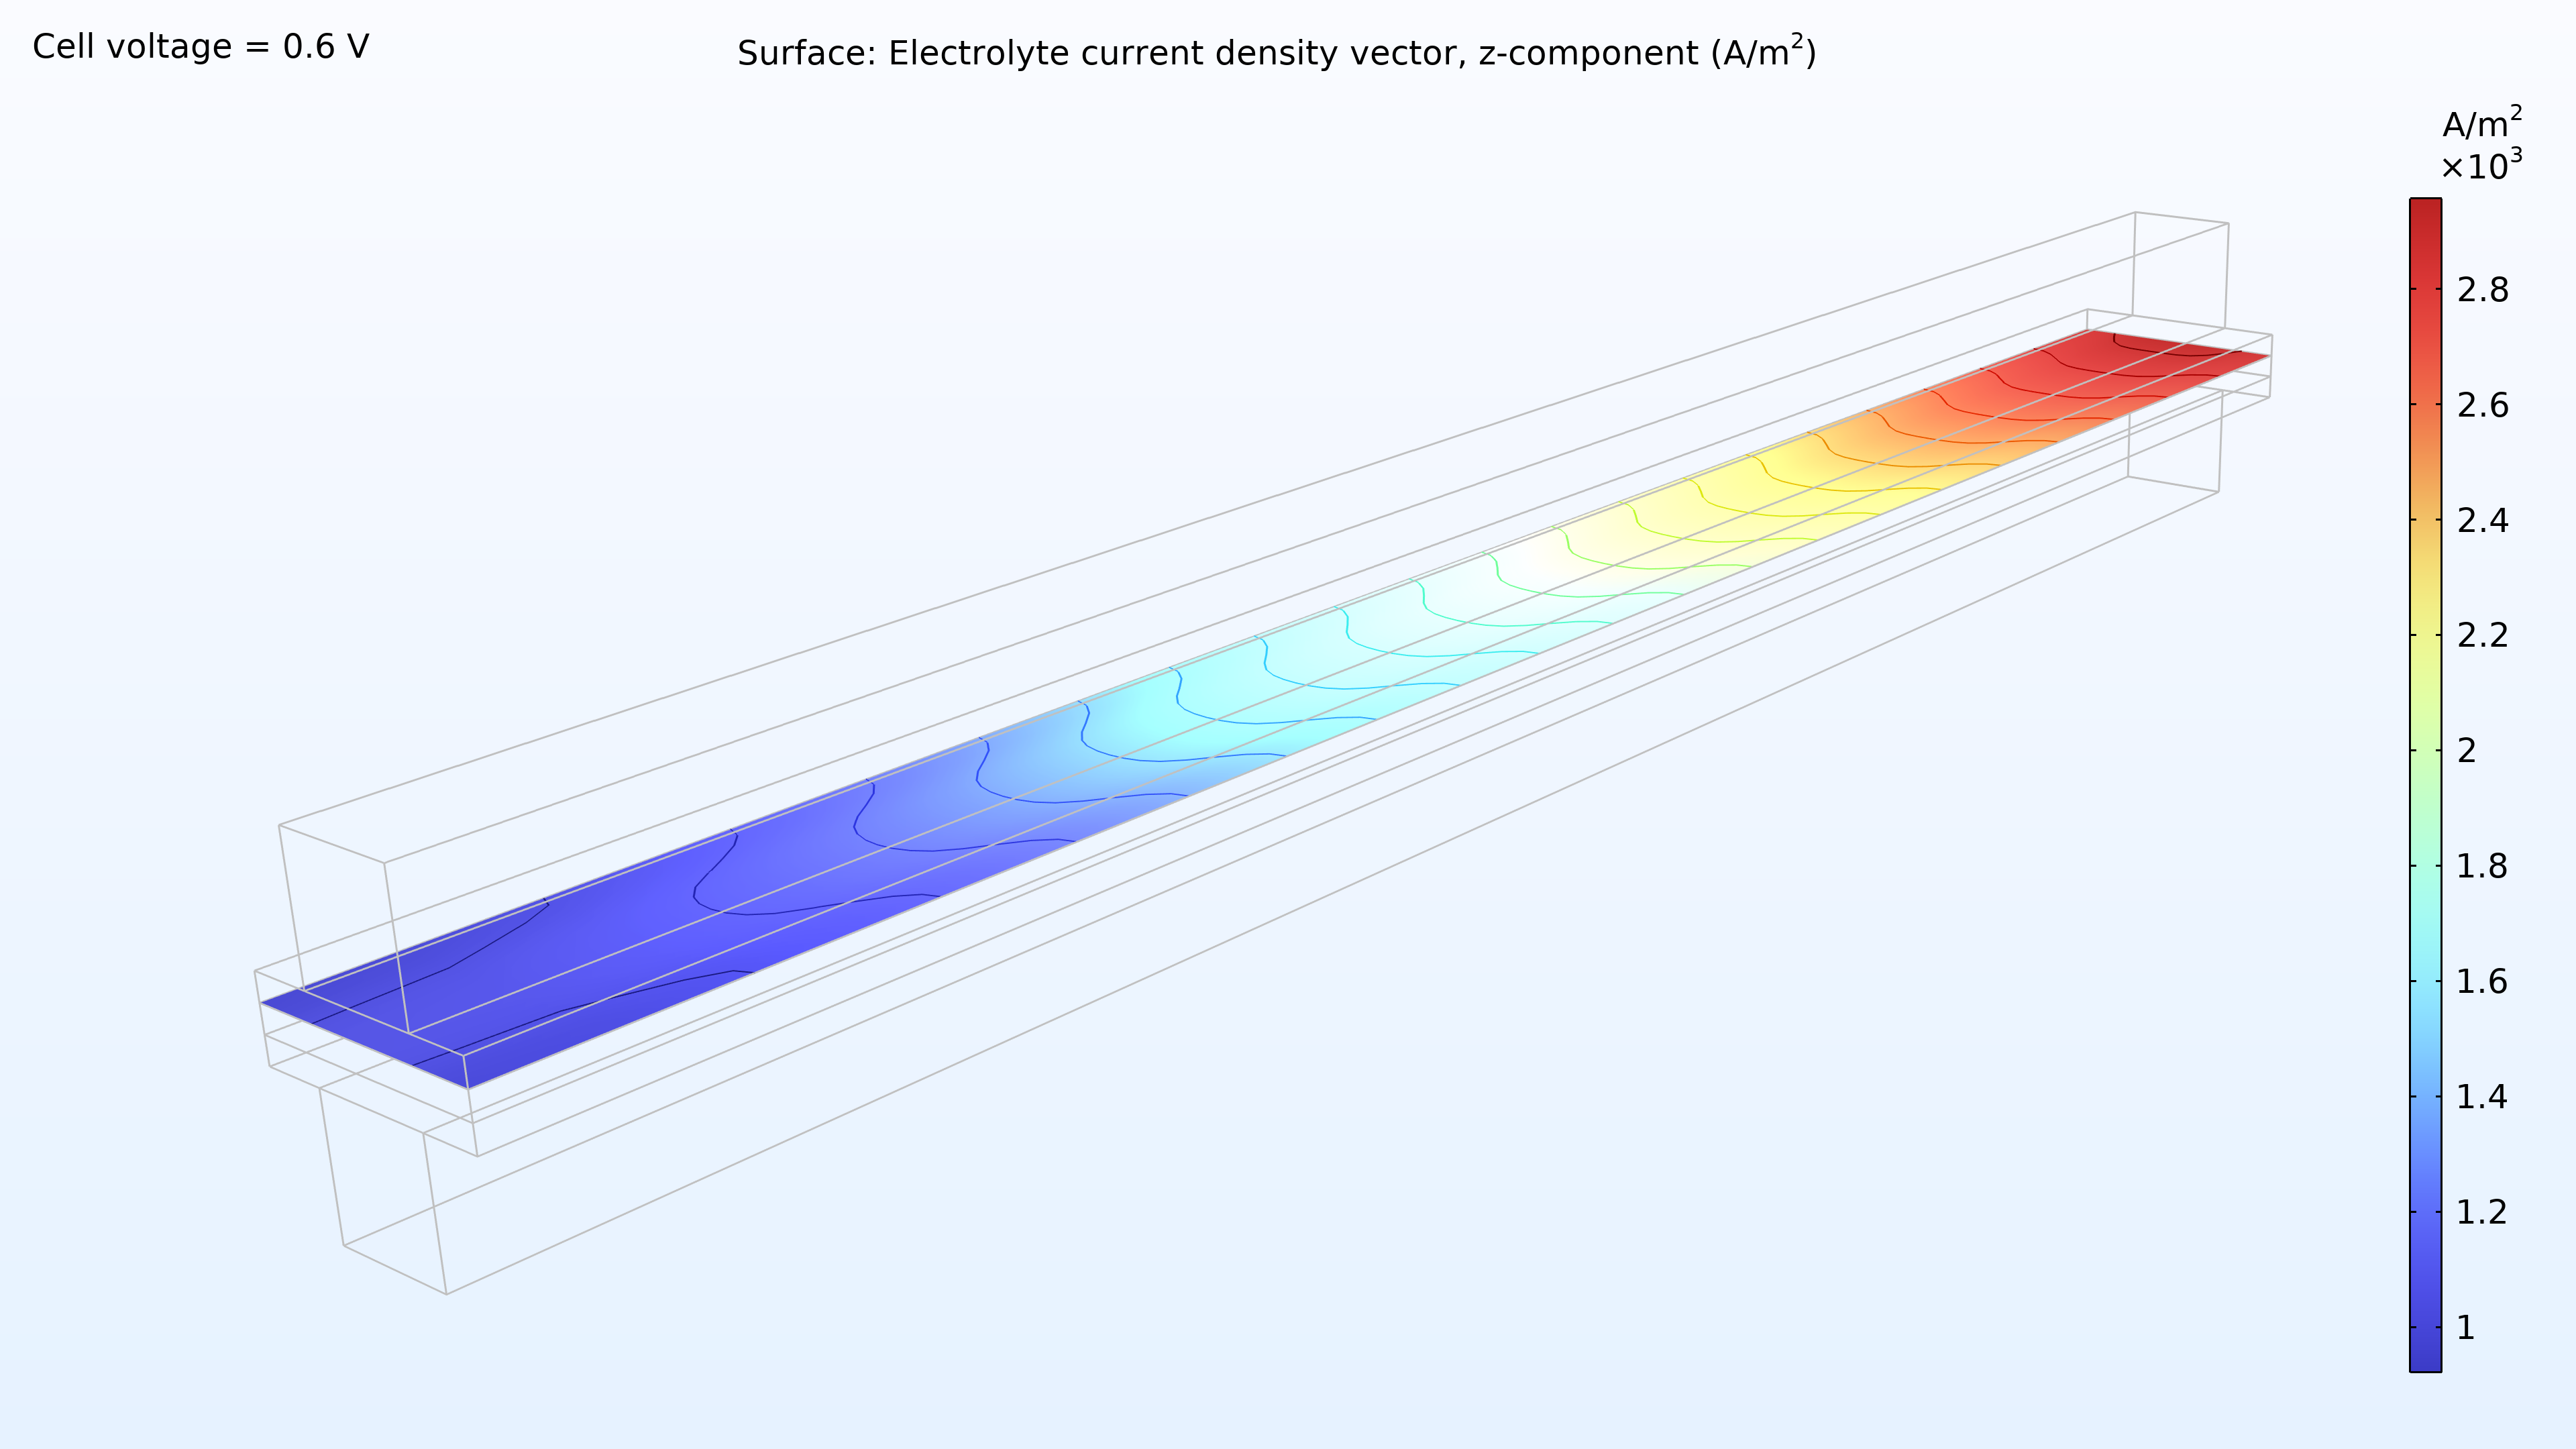 用彩虹色标显示电解液中的电流密度分布图，其中最左边是蓝色，中间是浅蓝色，最右边是红色。